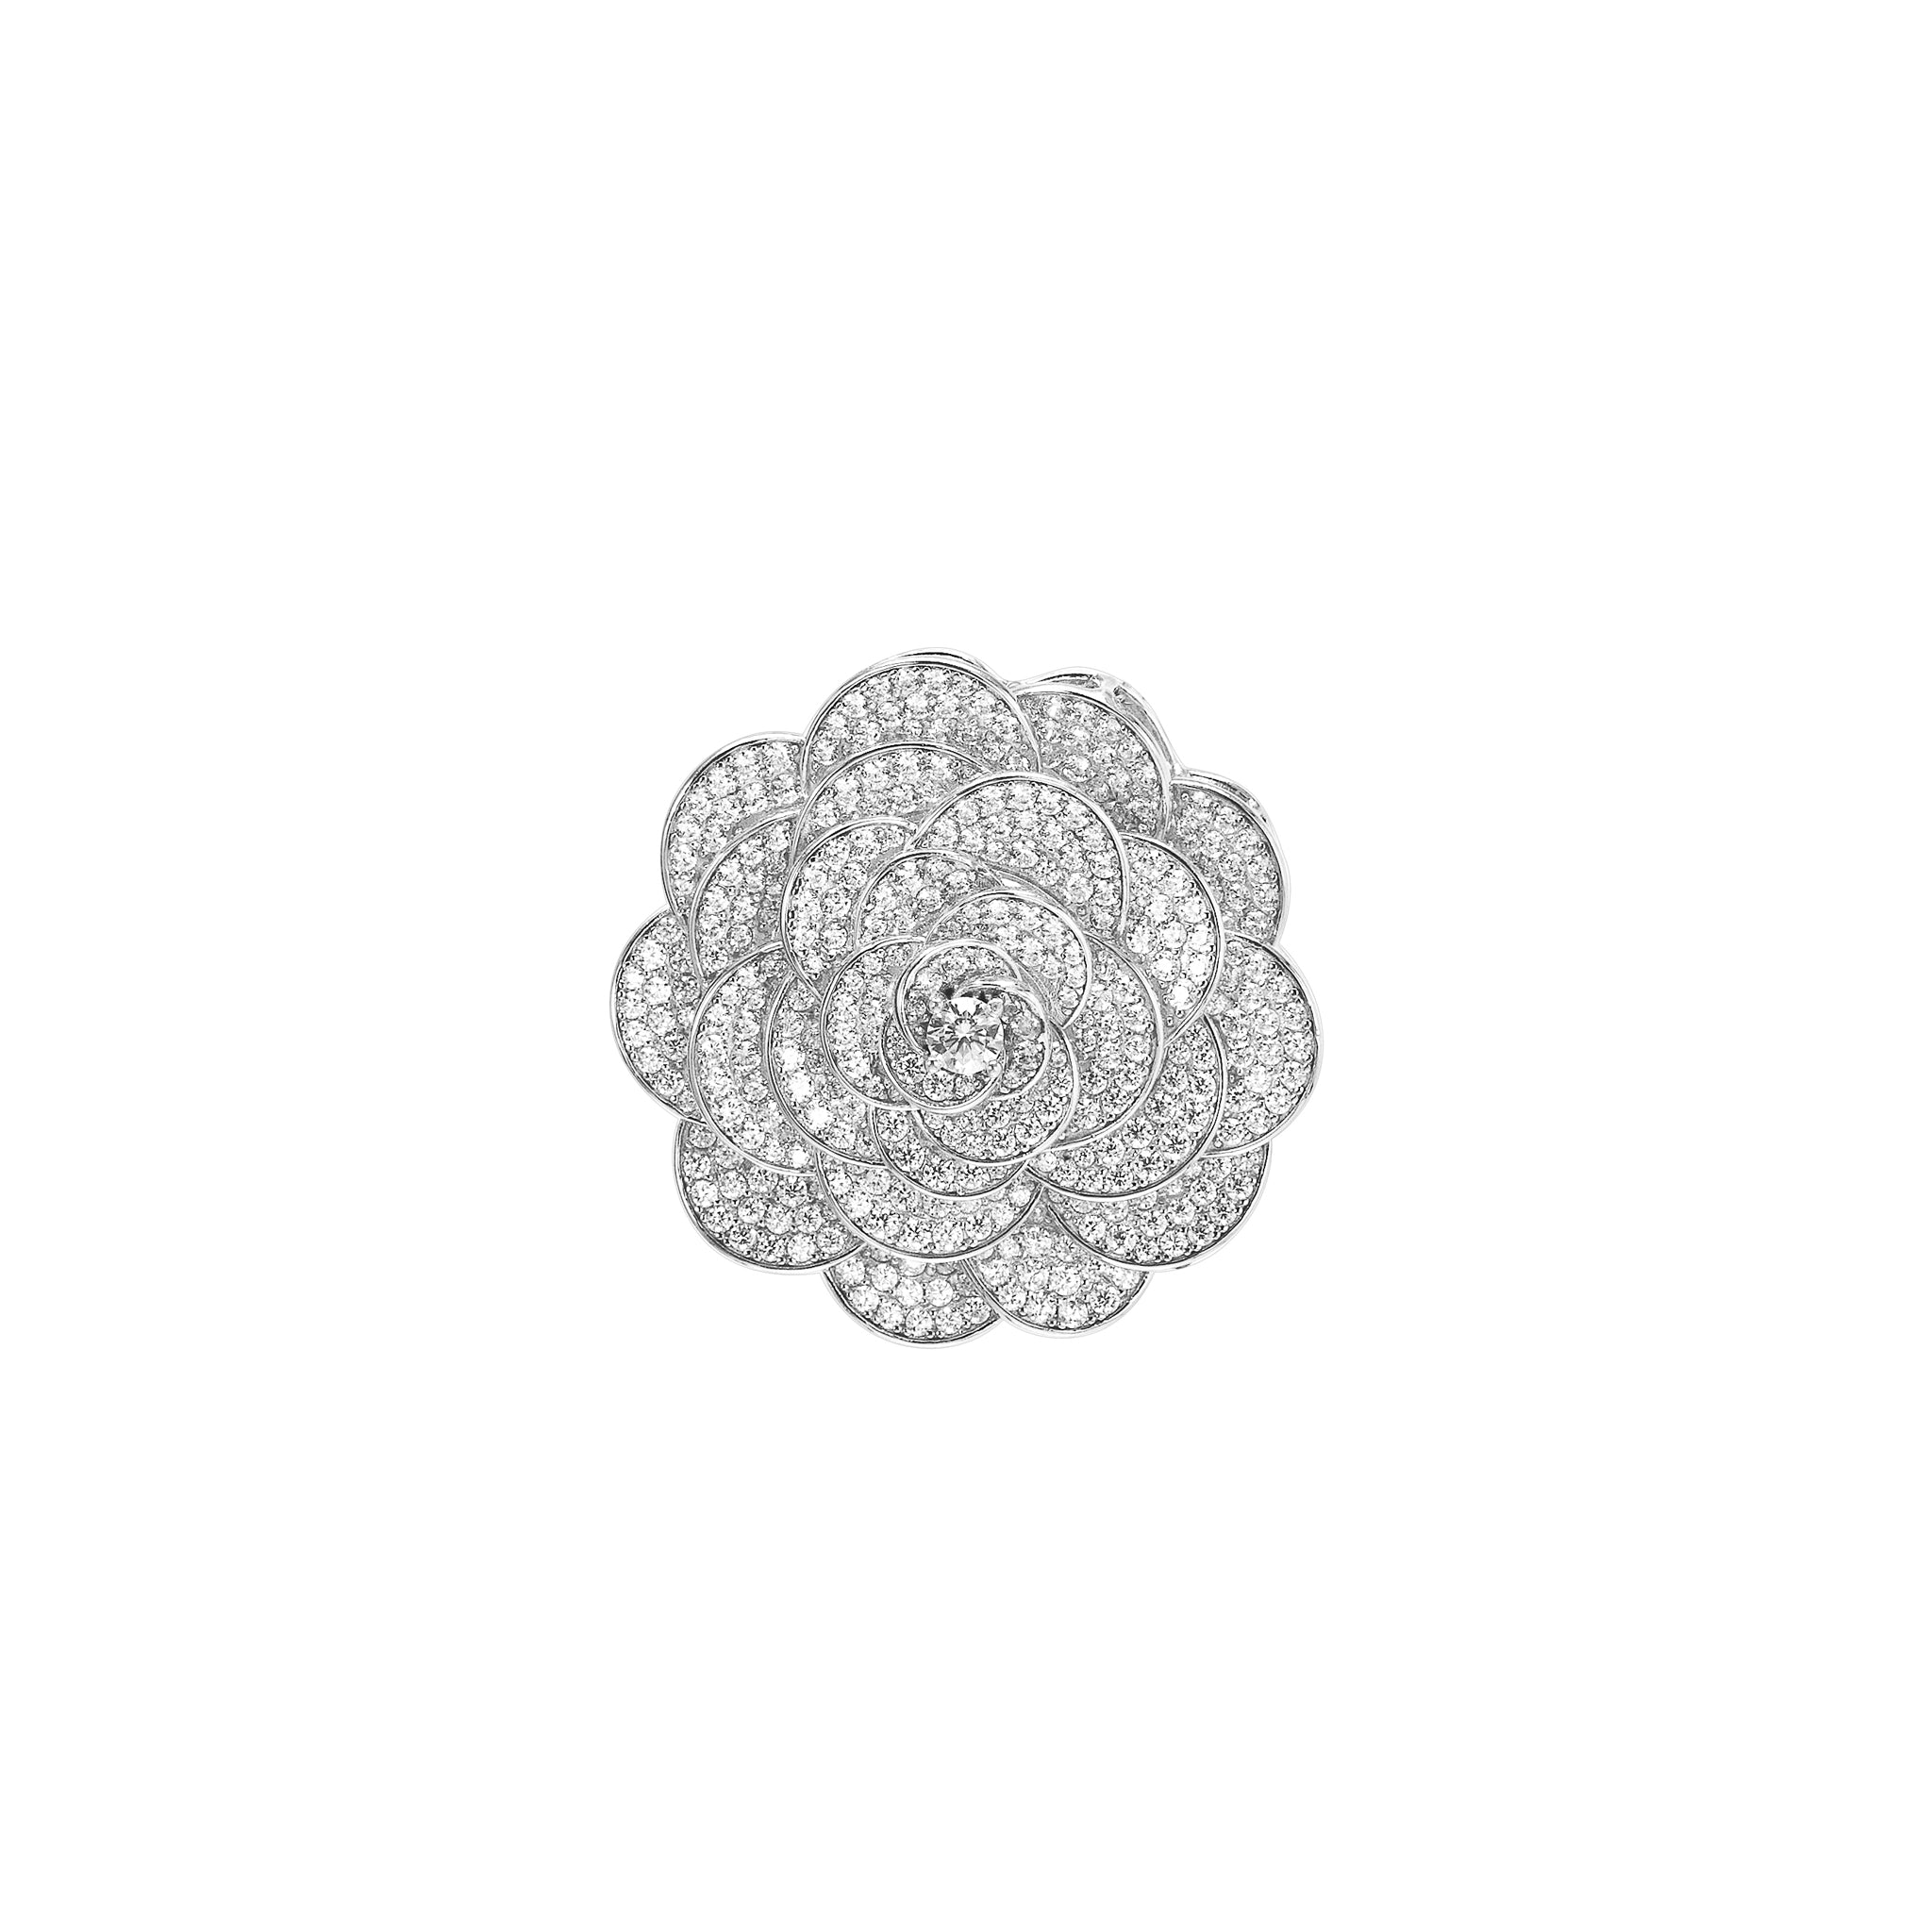 Cadis Camellia White Round Diamond 6 Carat Bracelet